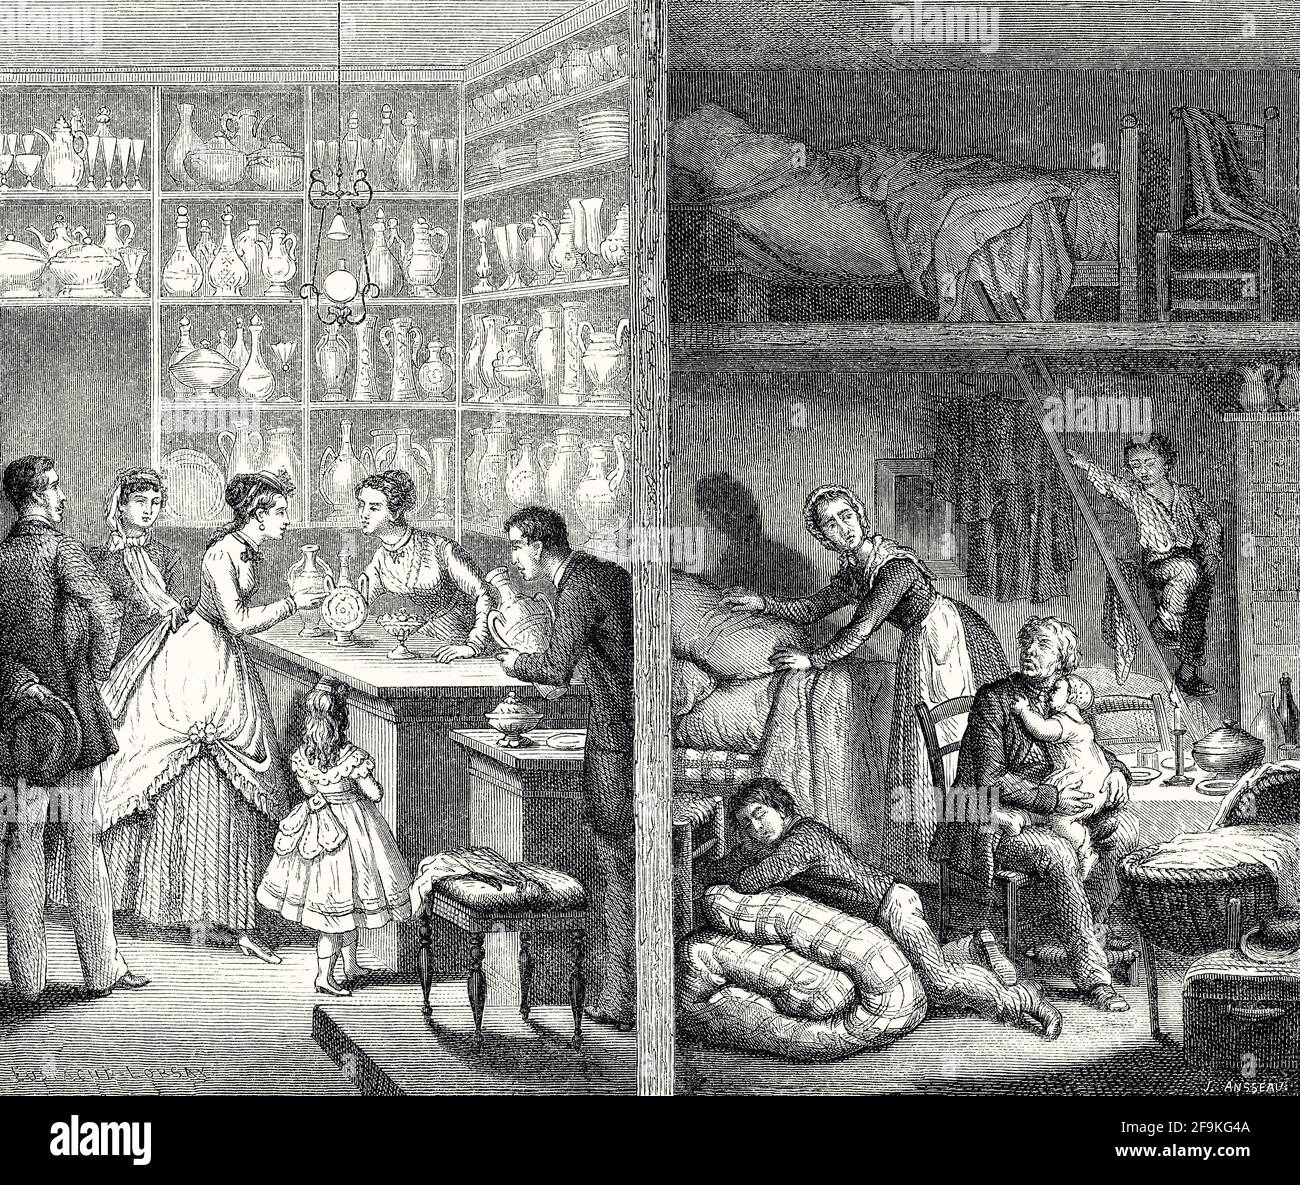 Boutique élégante et pauvreté, Paris, France, 19e siècle Banque D'Images